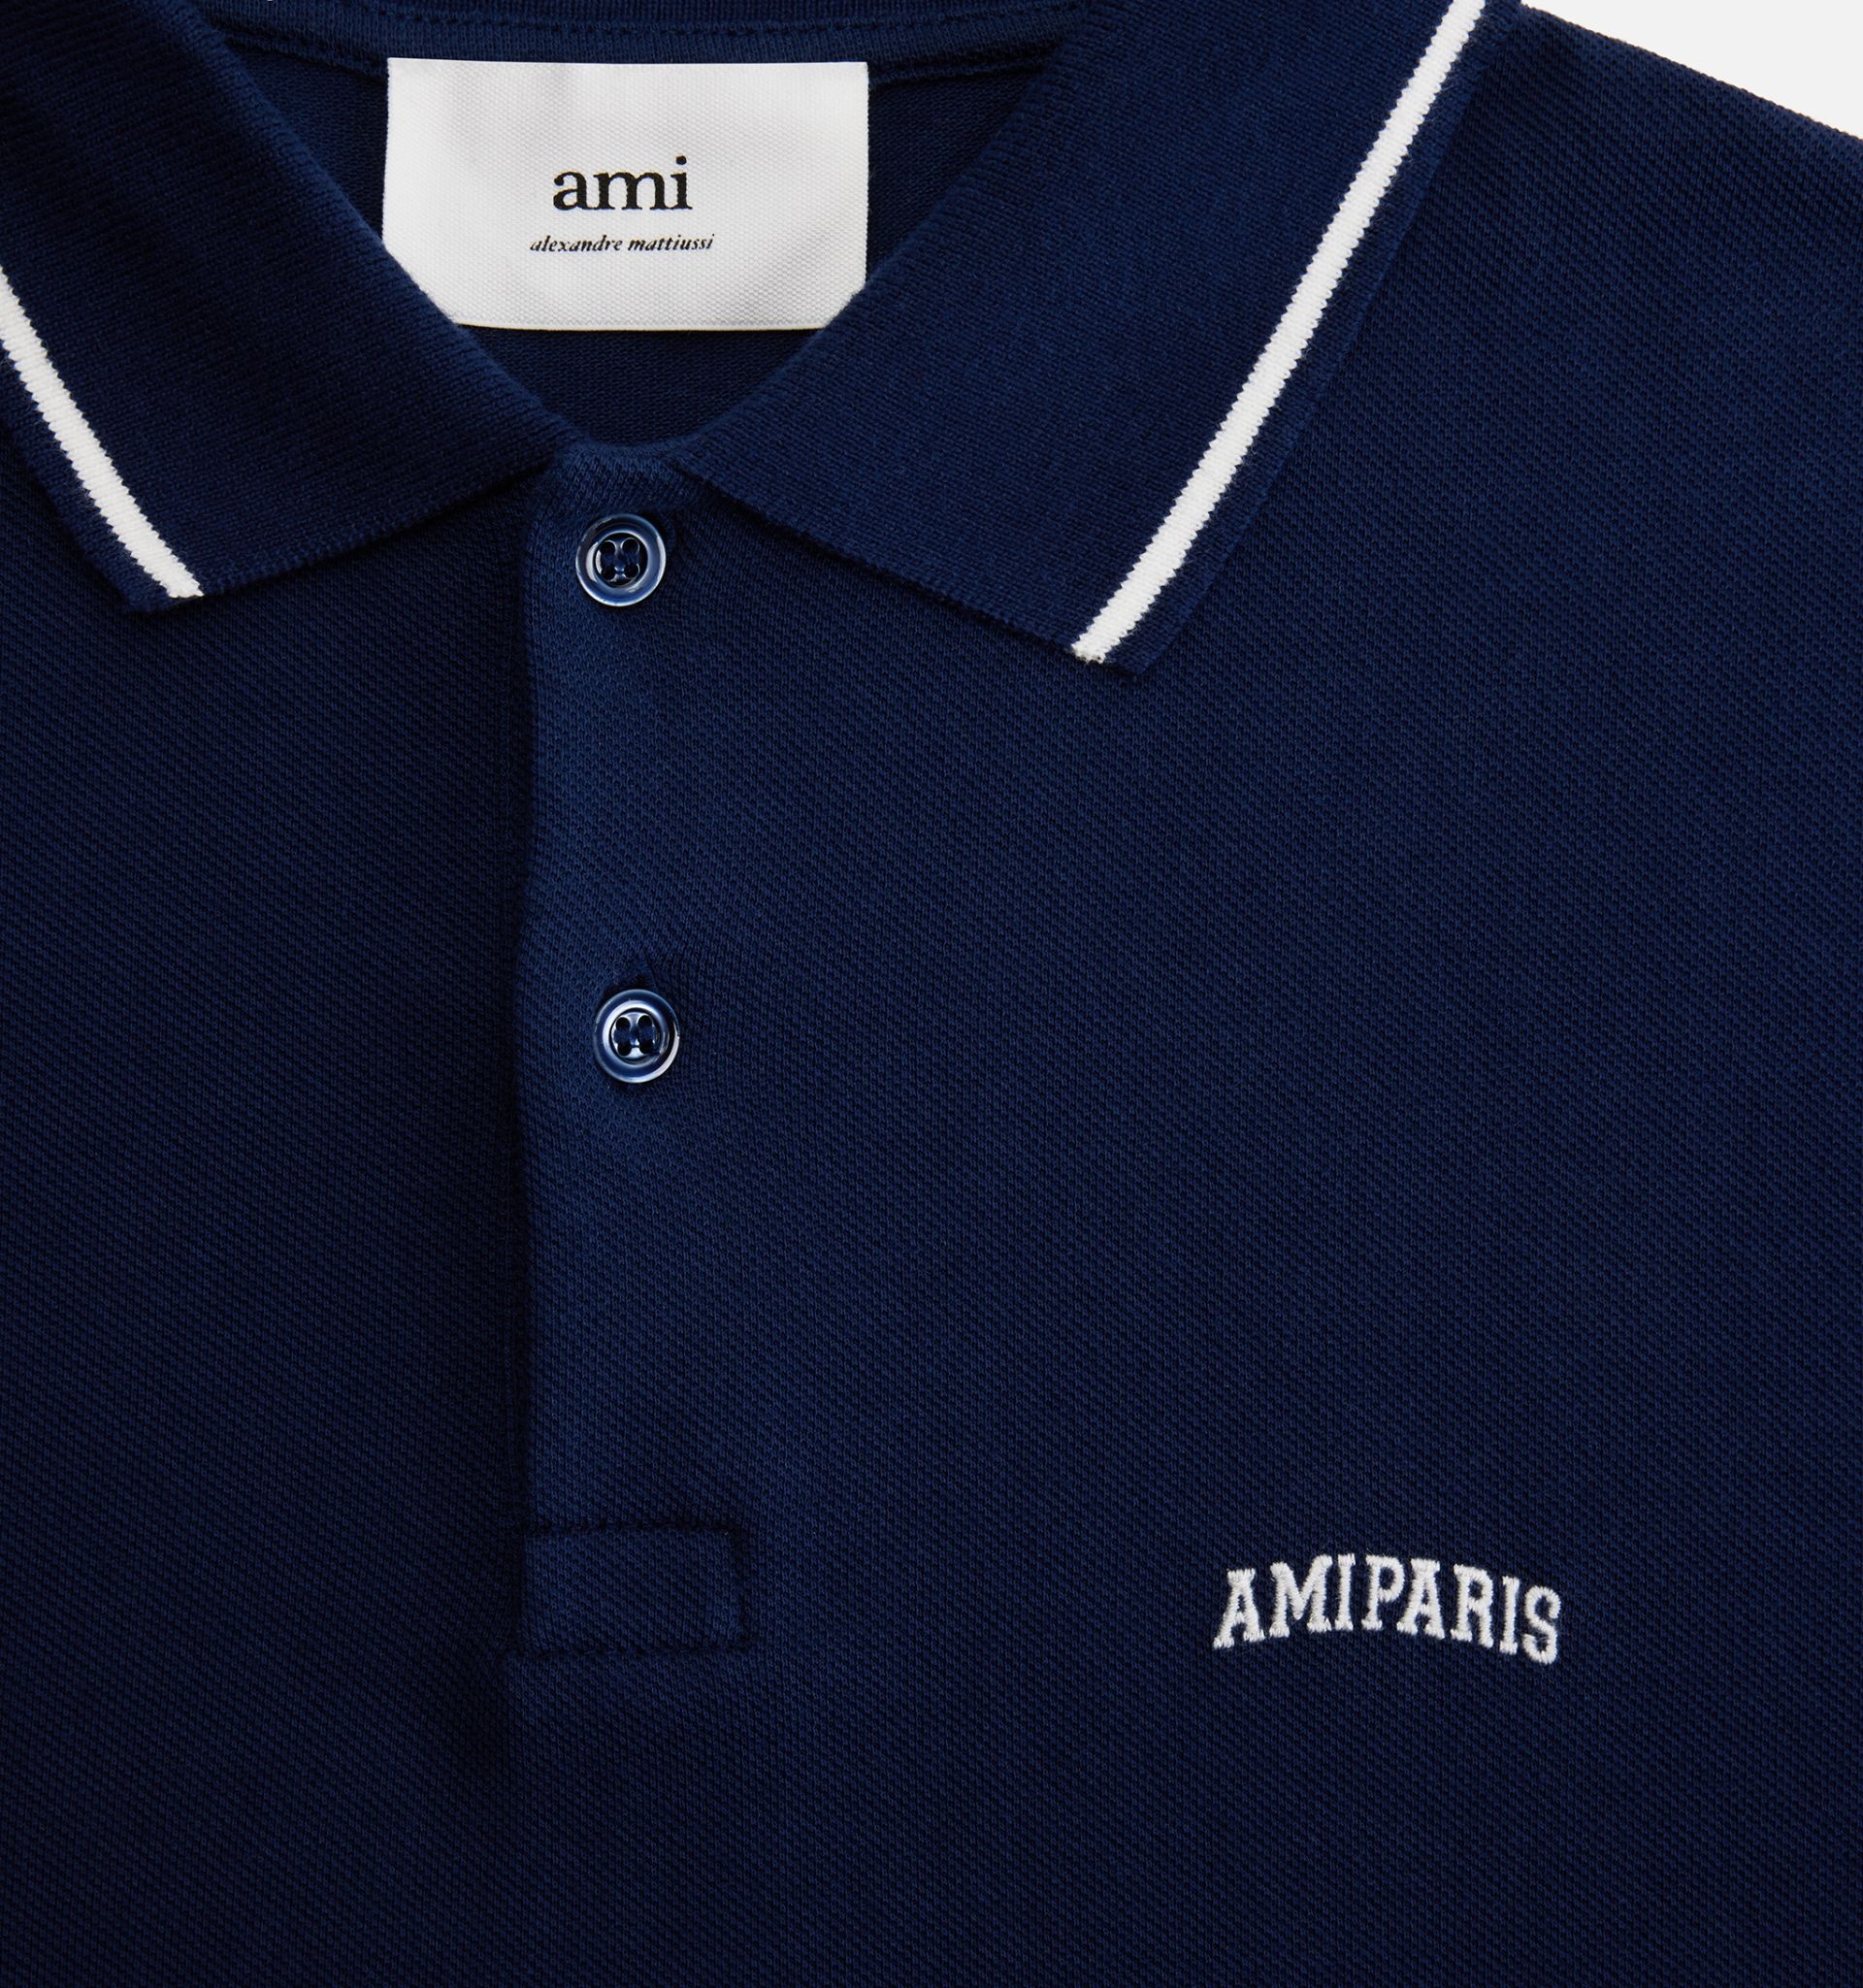 Ami Paris Polo Shirt - 4